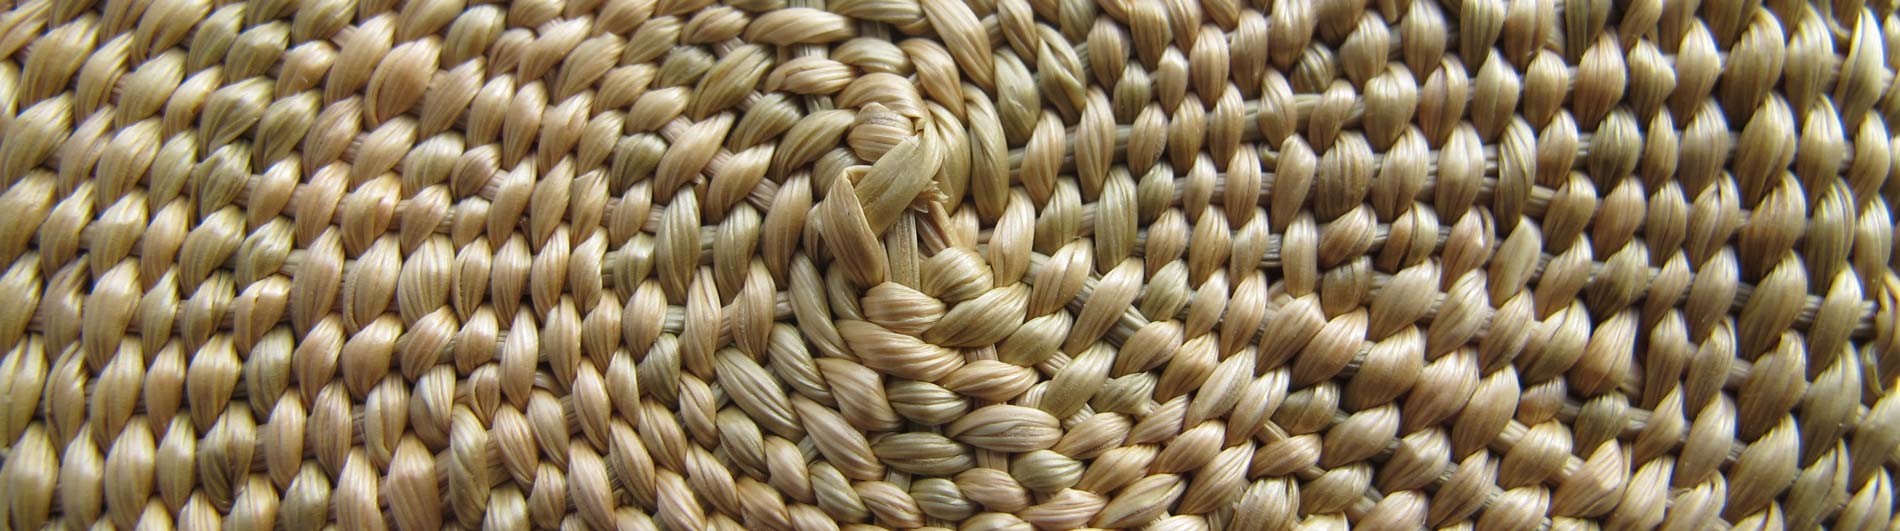 Closeup of a basket